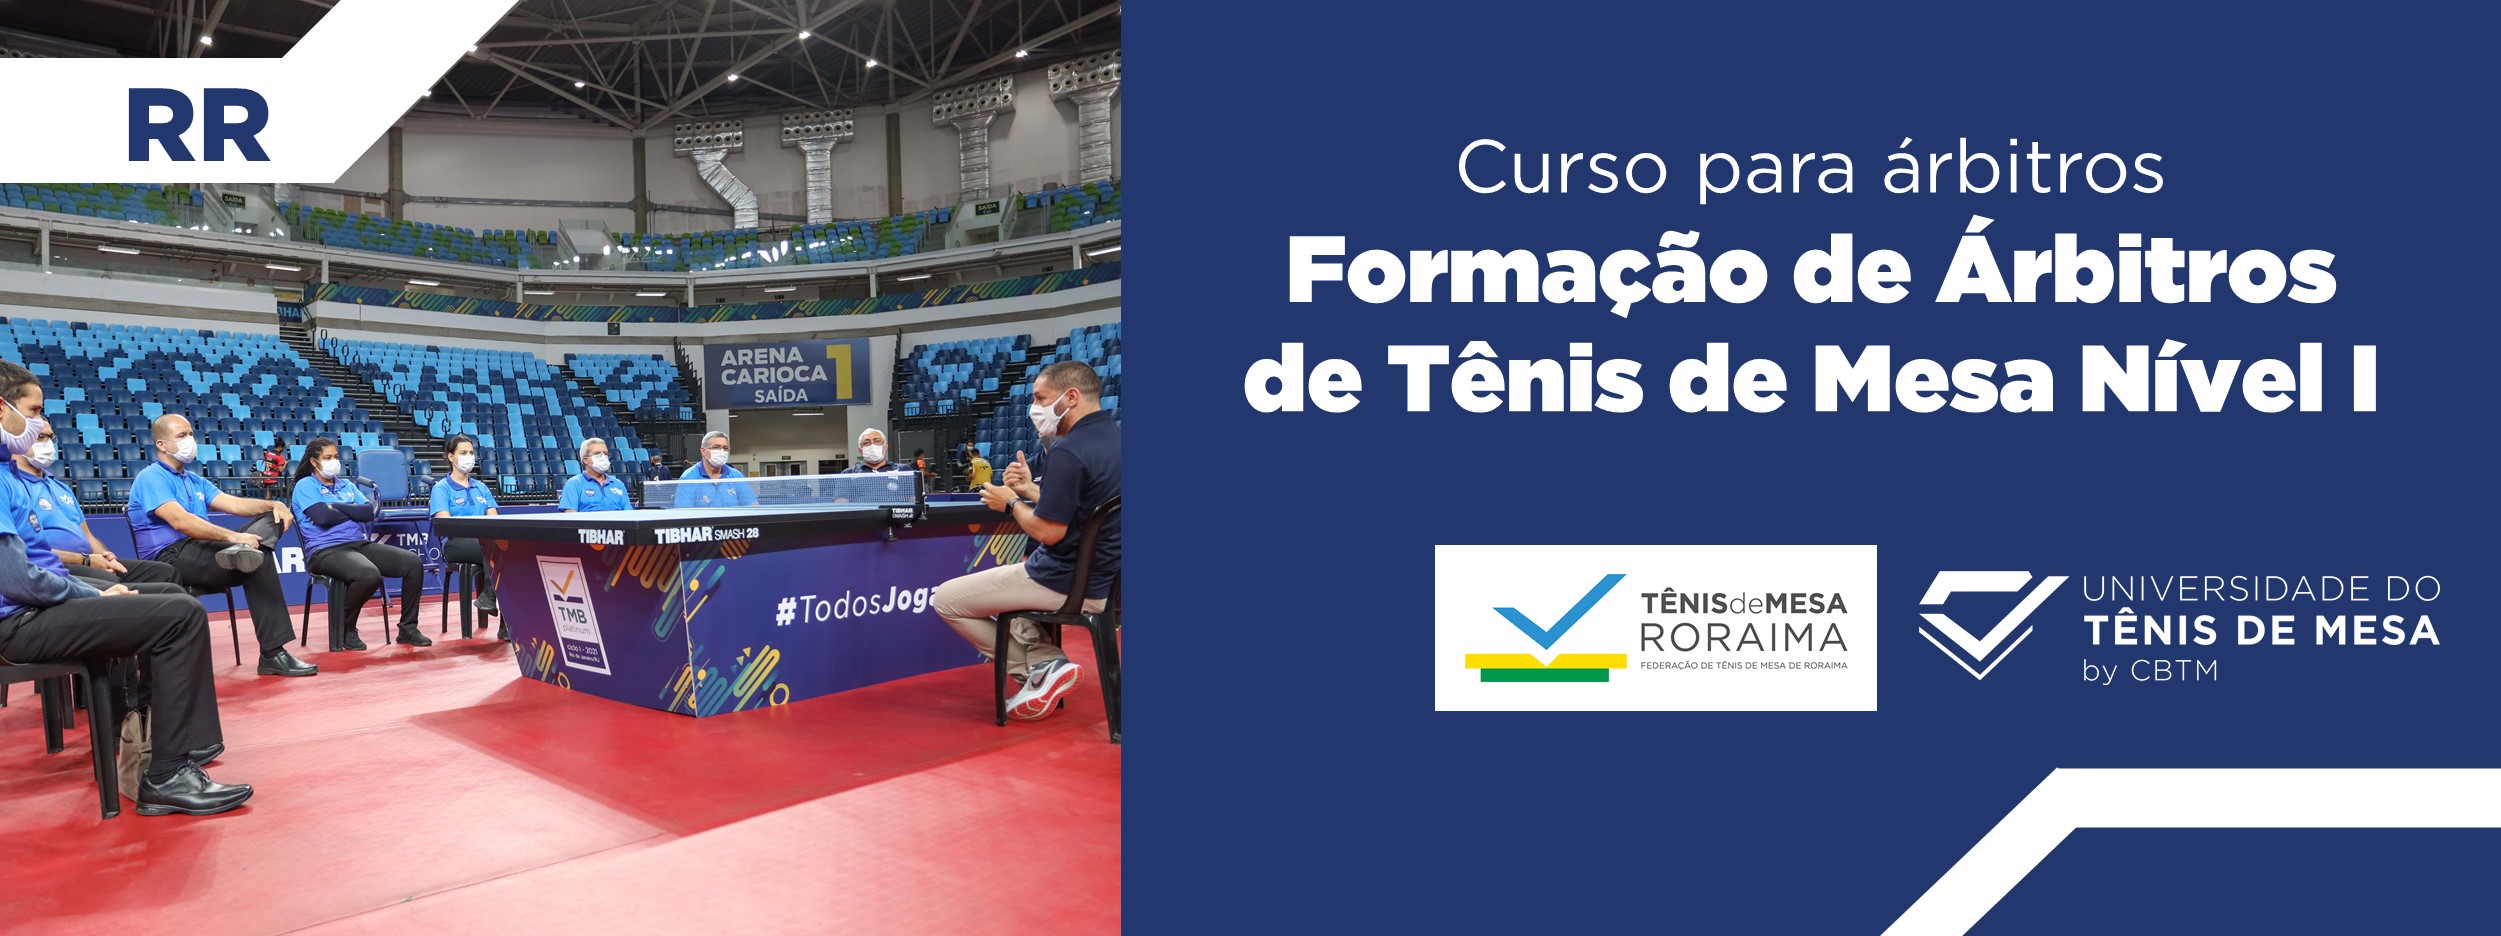 Banner - Formação de Árbitros de Tênis de Mesa  Nível I – Estadual - Federação de Mesatenistas de Roraima